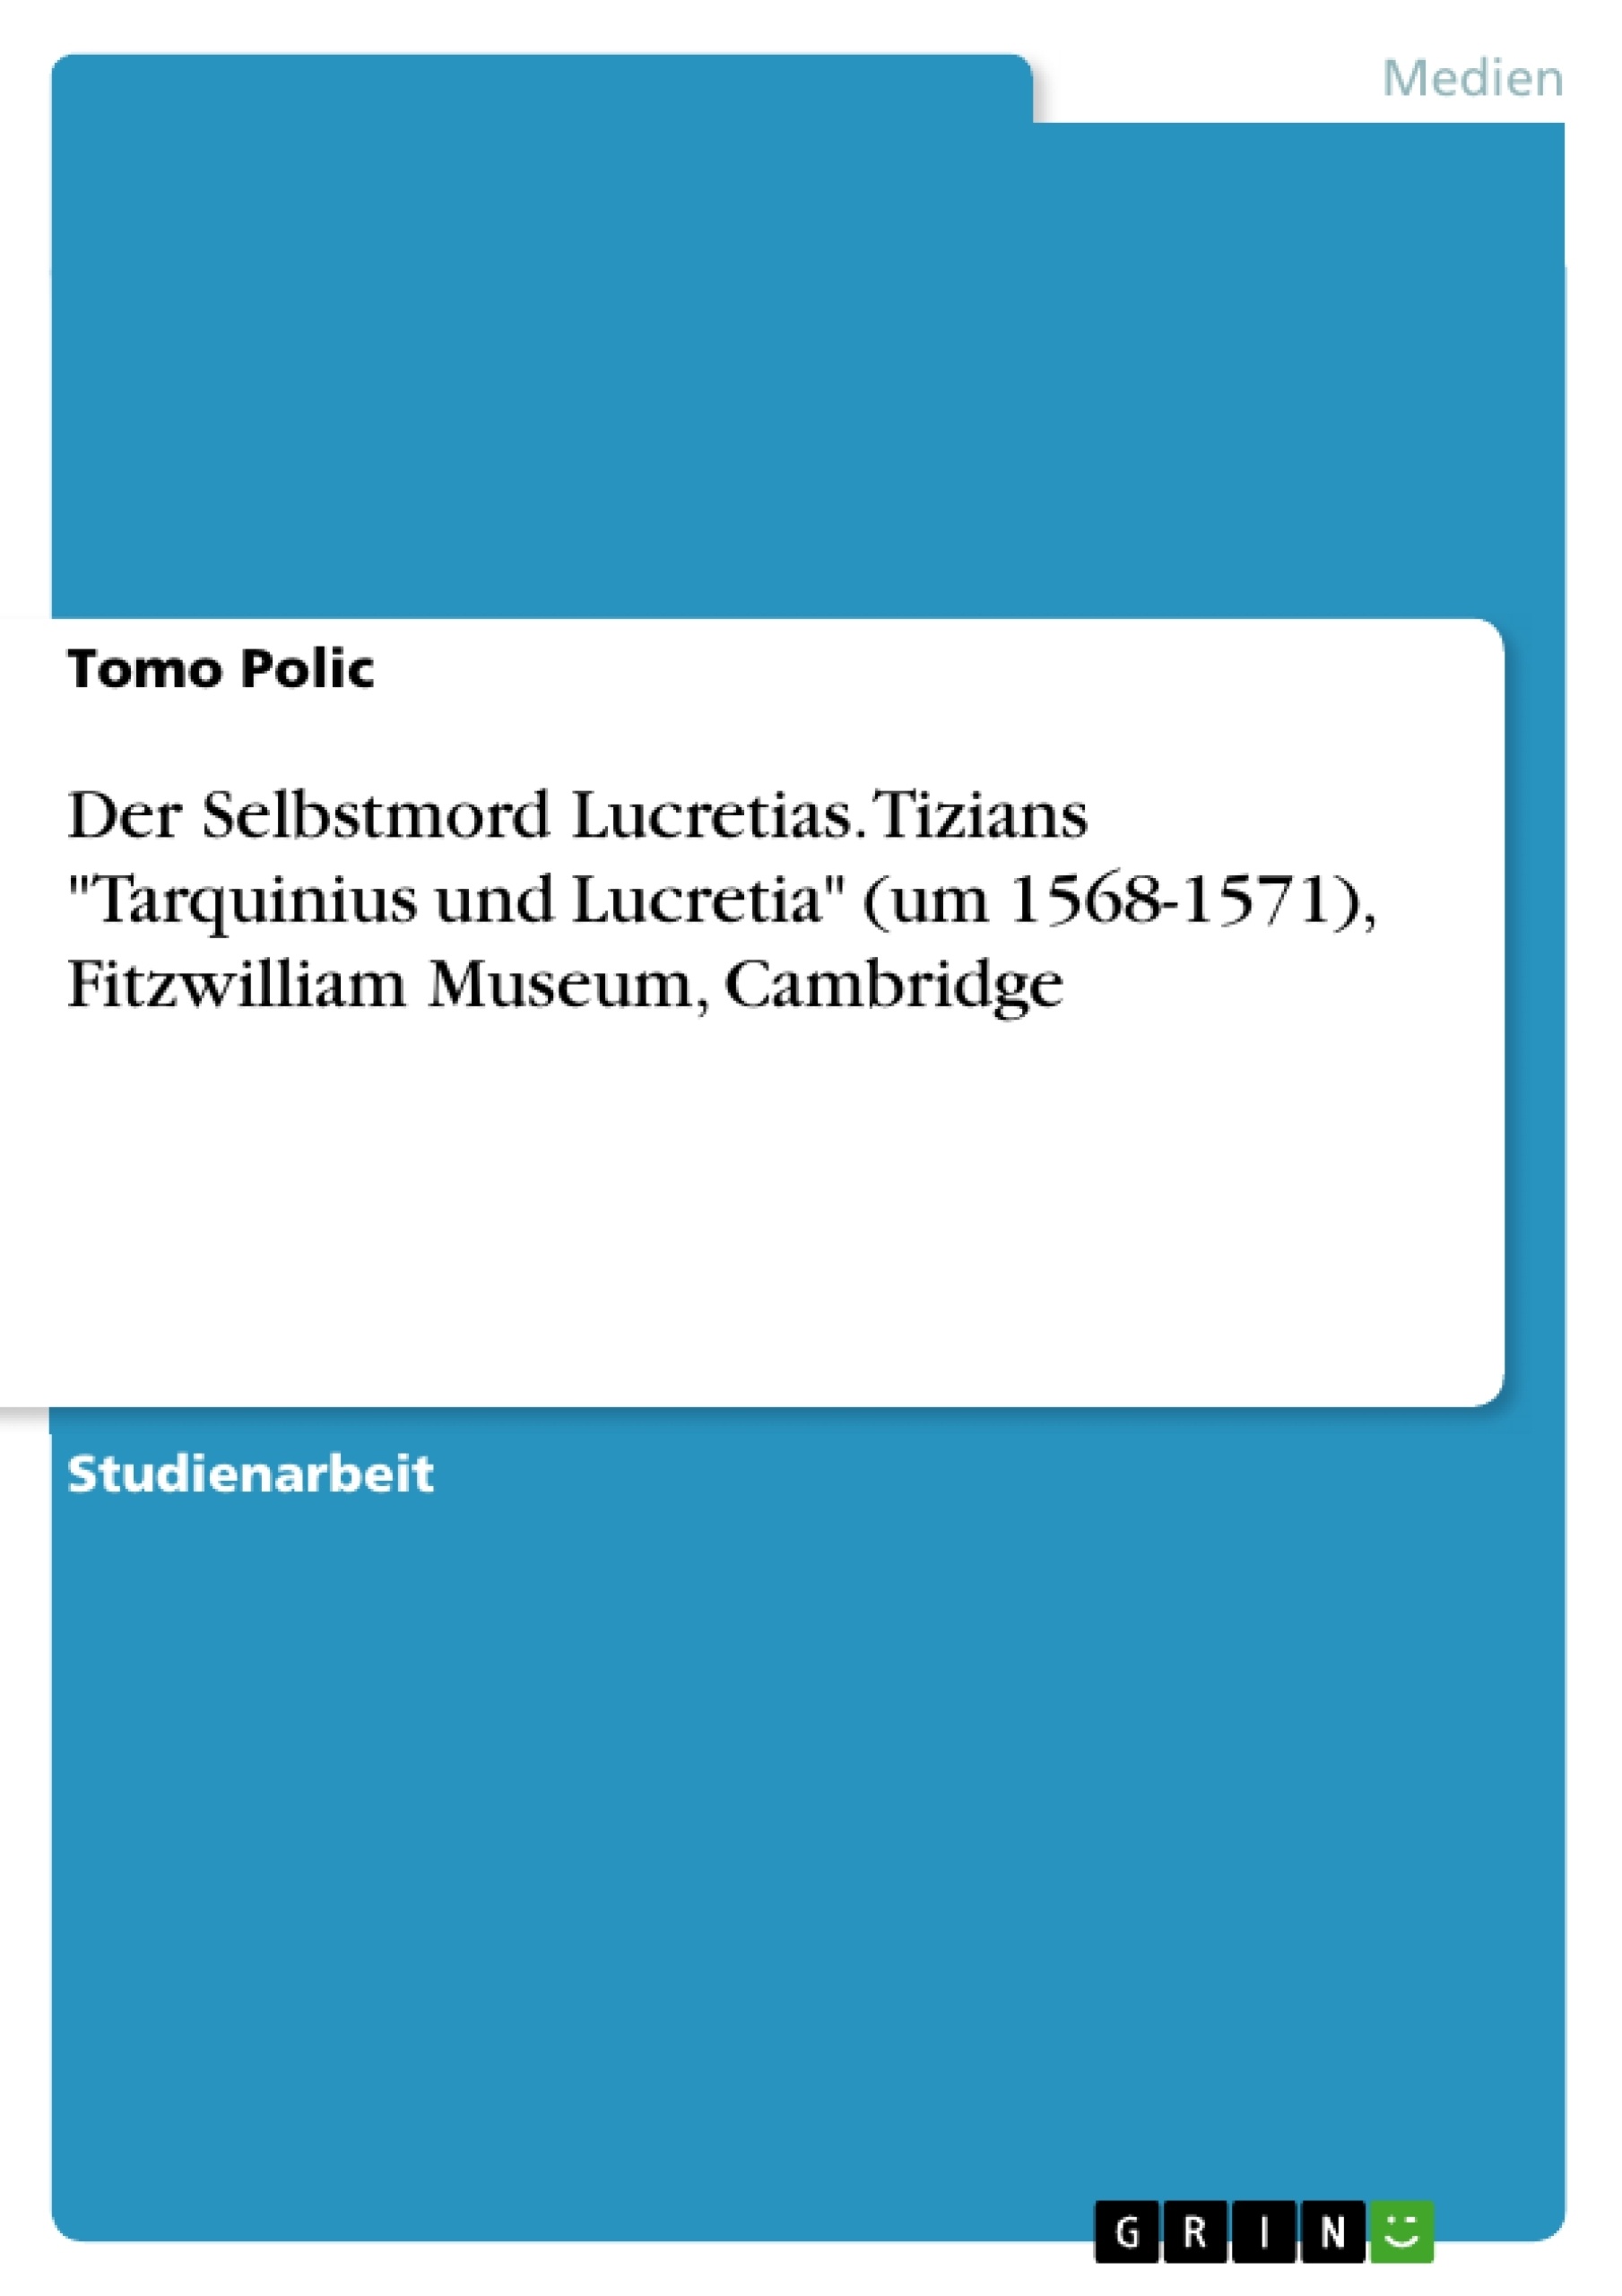 Titre: Der Selbstmord Lucretias. Tizians "Tarquinius und Lucretia" (um 1568-1571), Fitzwilliam Museum, Cambridge